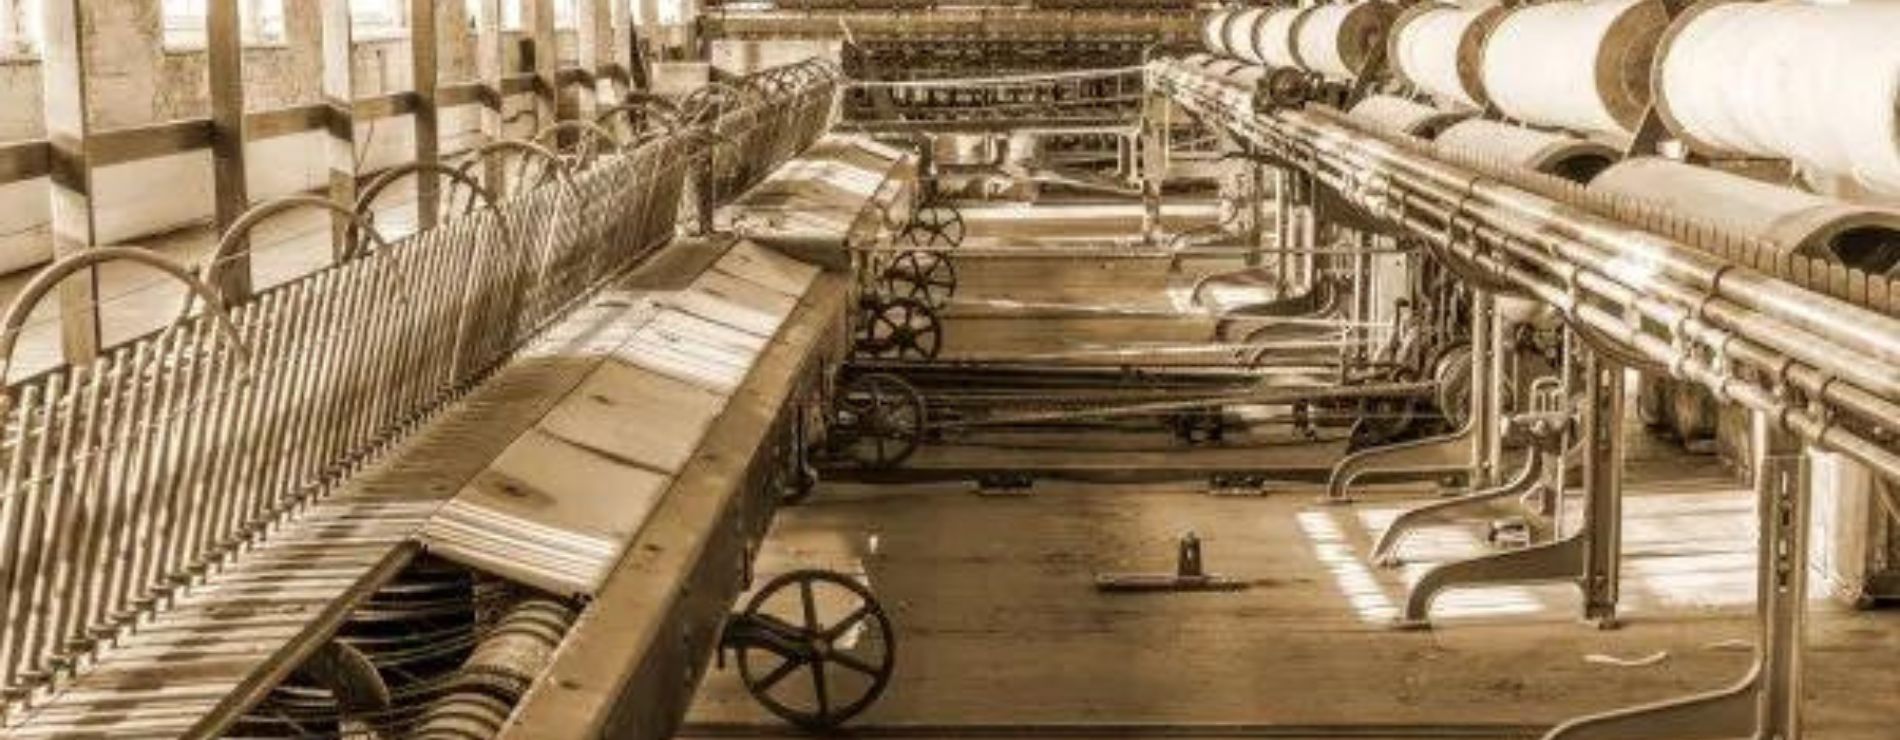 imagens de máquinas de fábrica téxtil